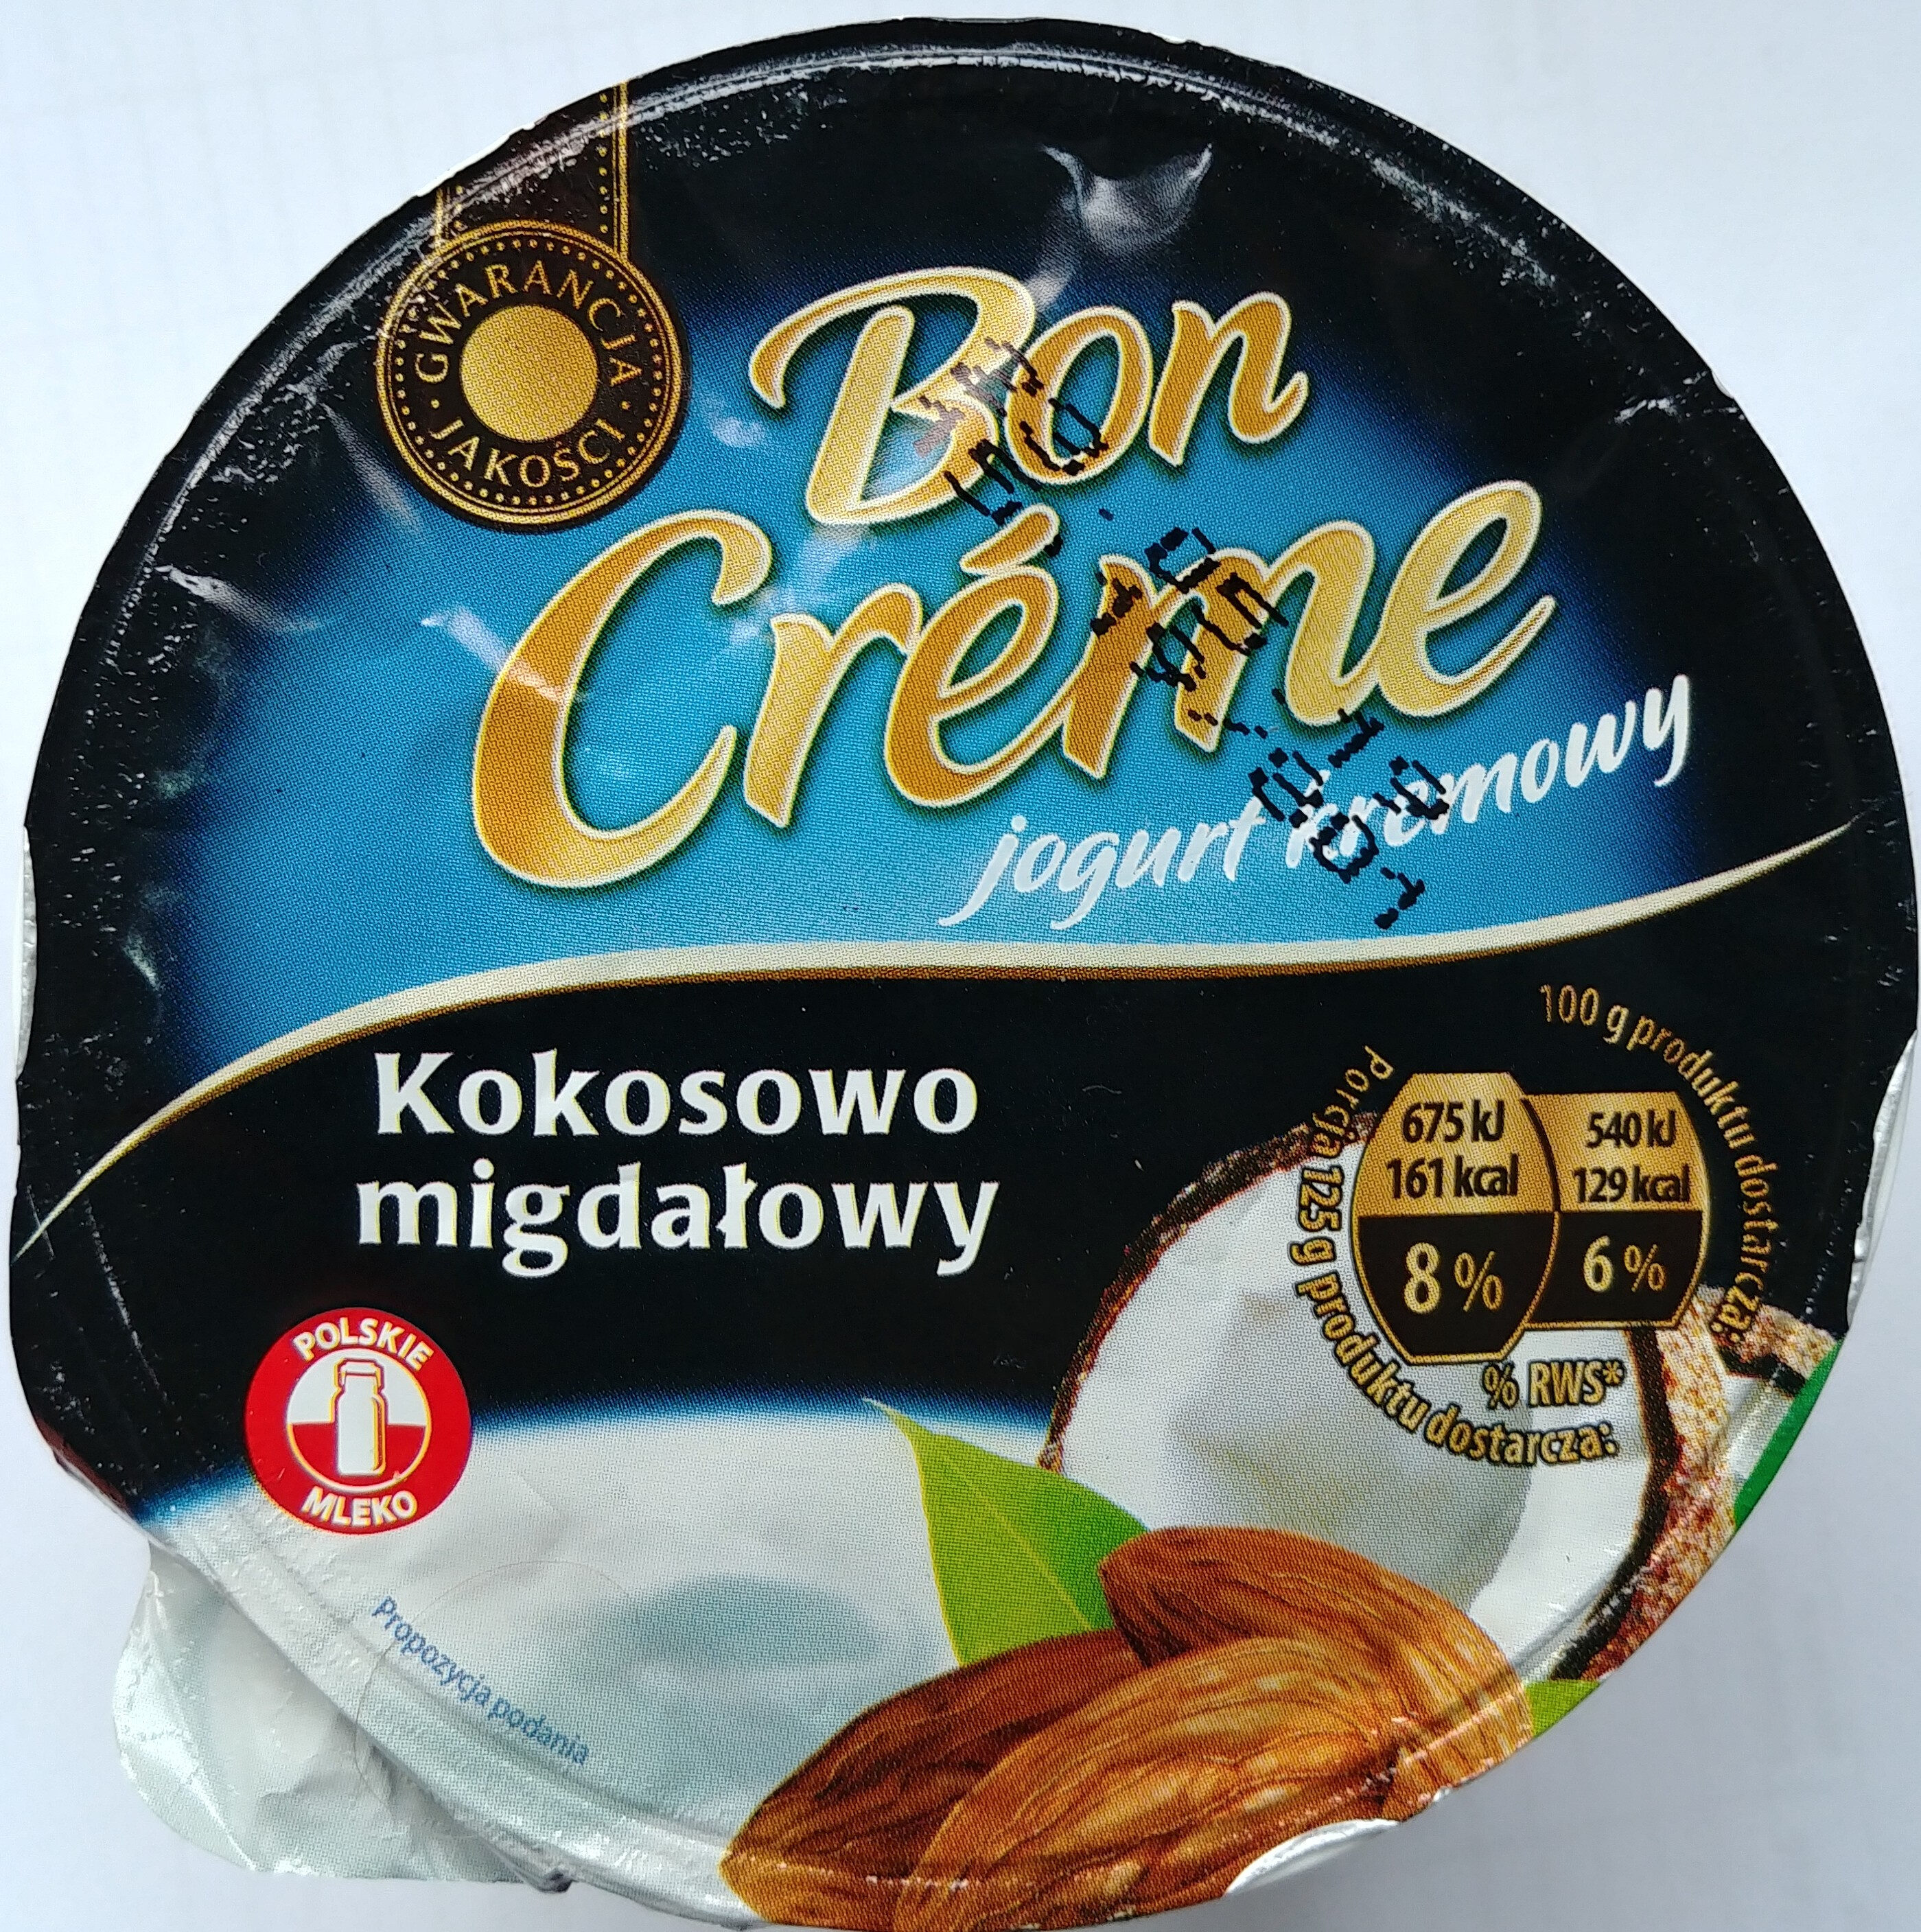 Jogurt kremowy kokosowy-migdały - Product - pl